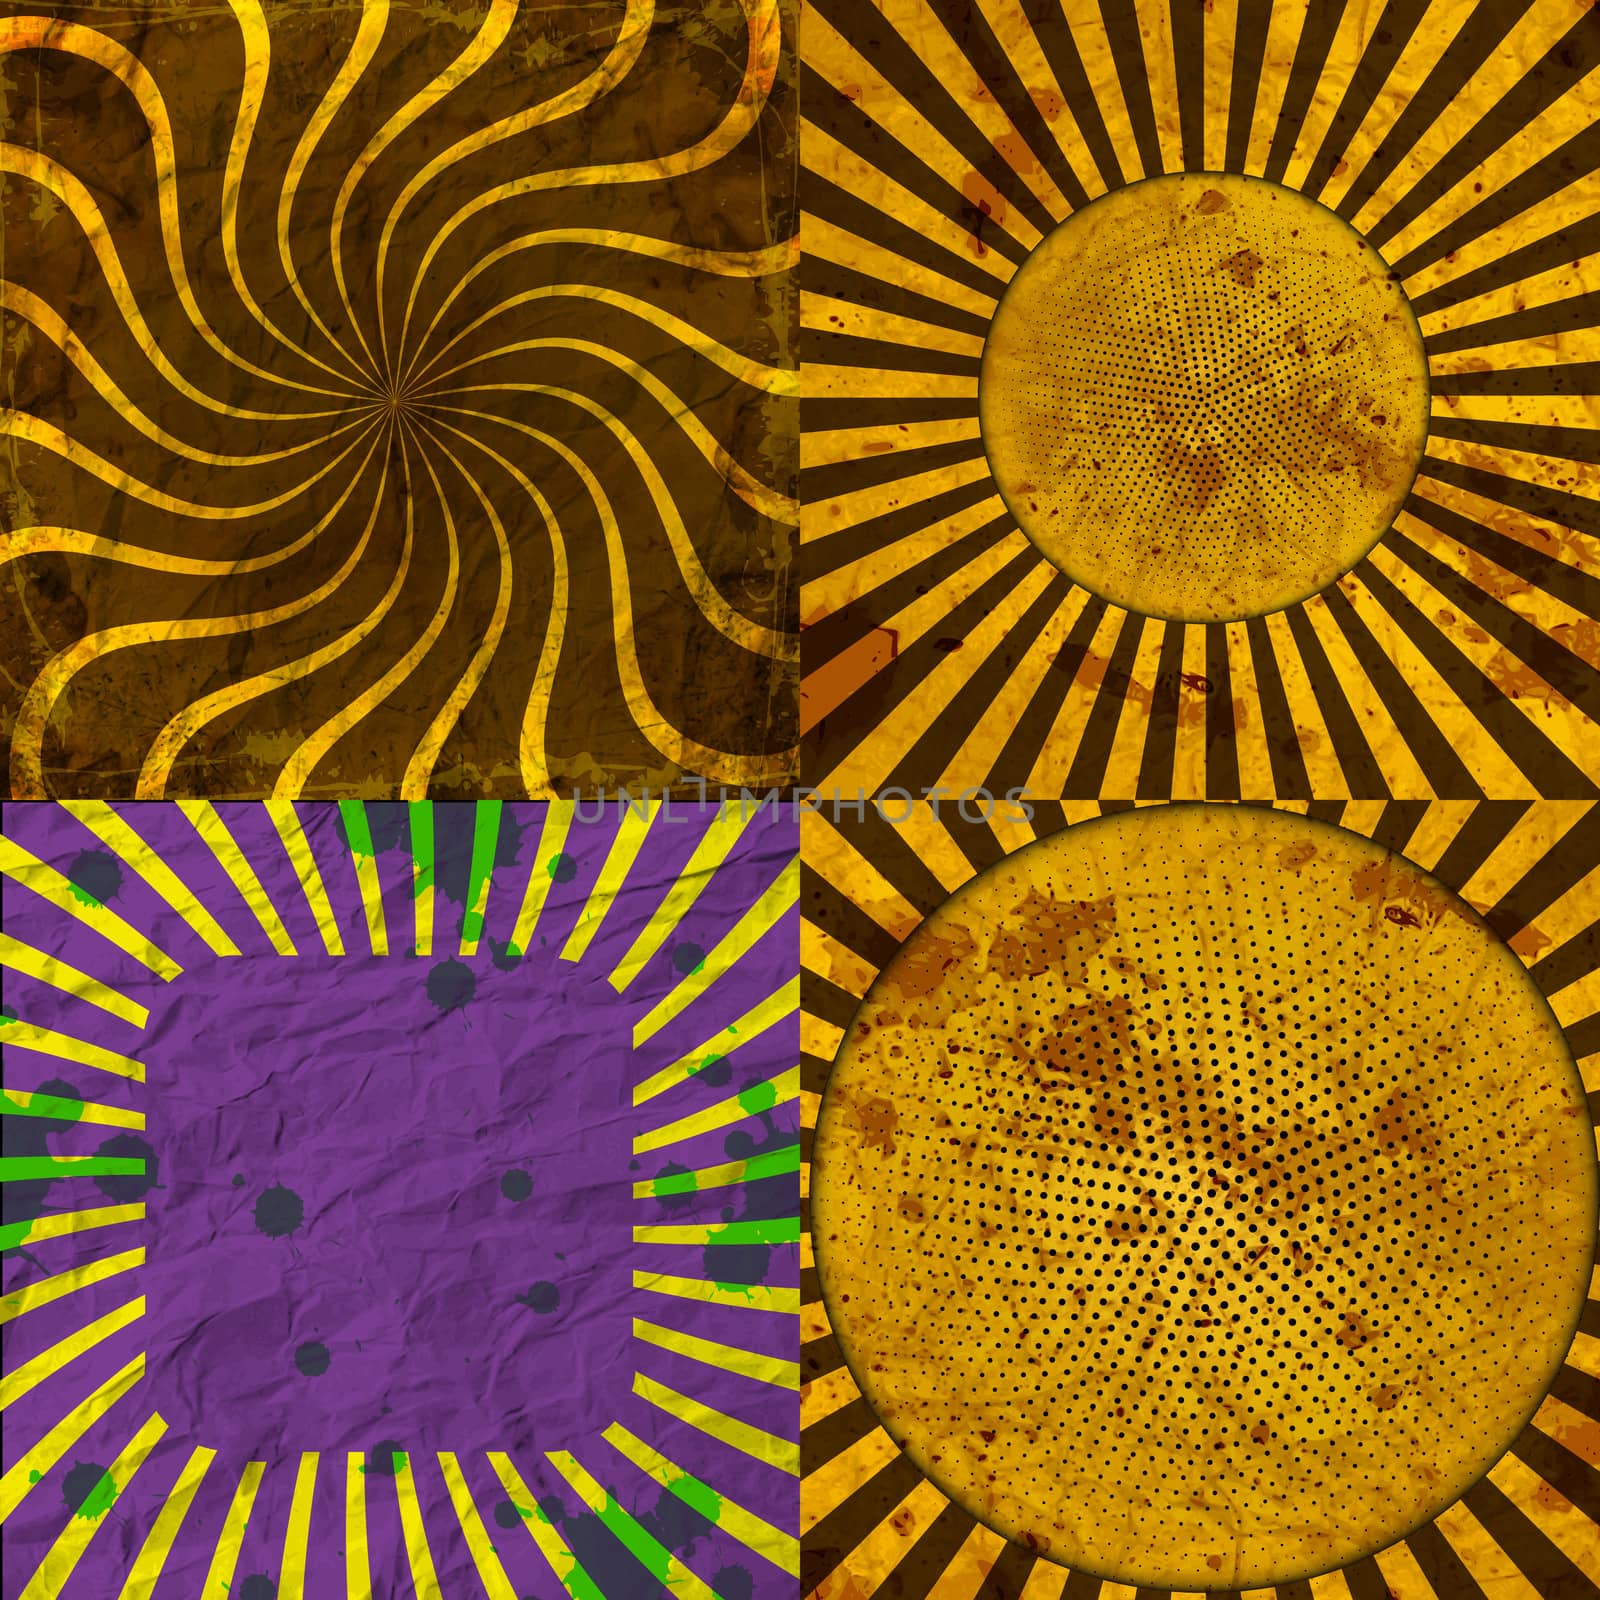 Sunburst Retro Textured Grunge Background Set. Vintage Rays.  by serhii_lohvyniuk